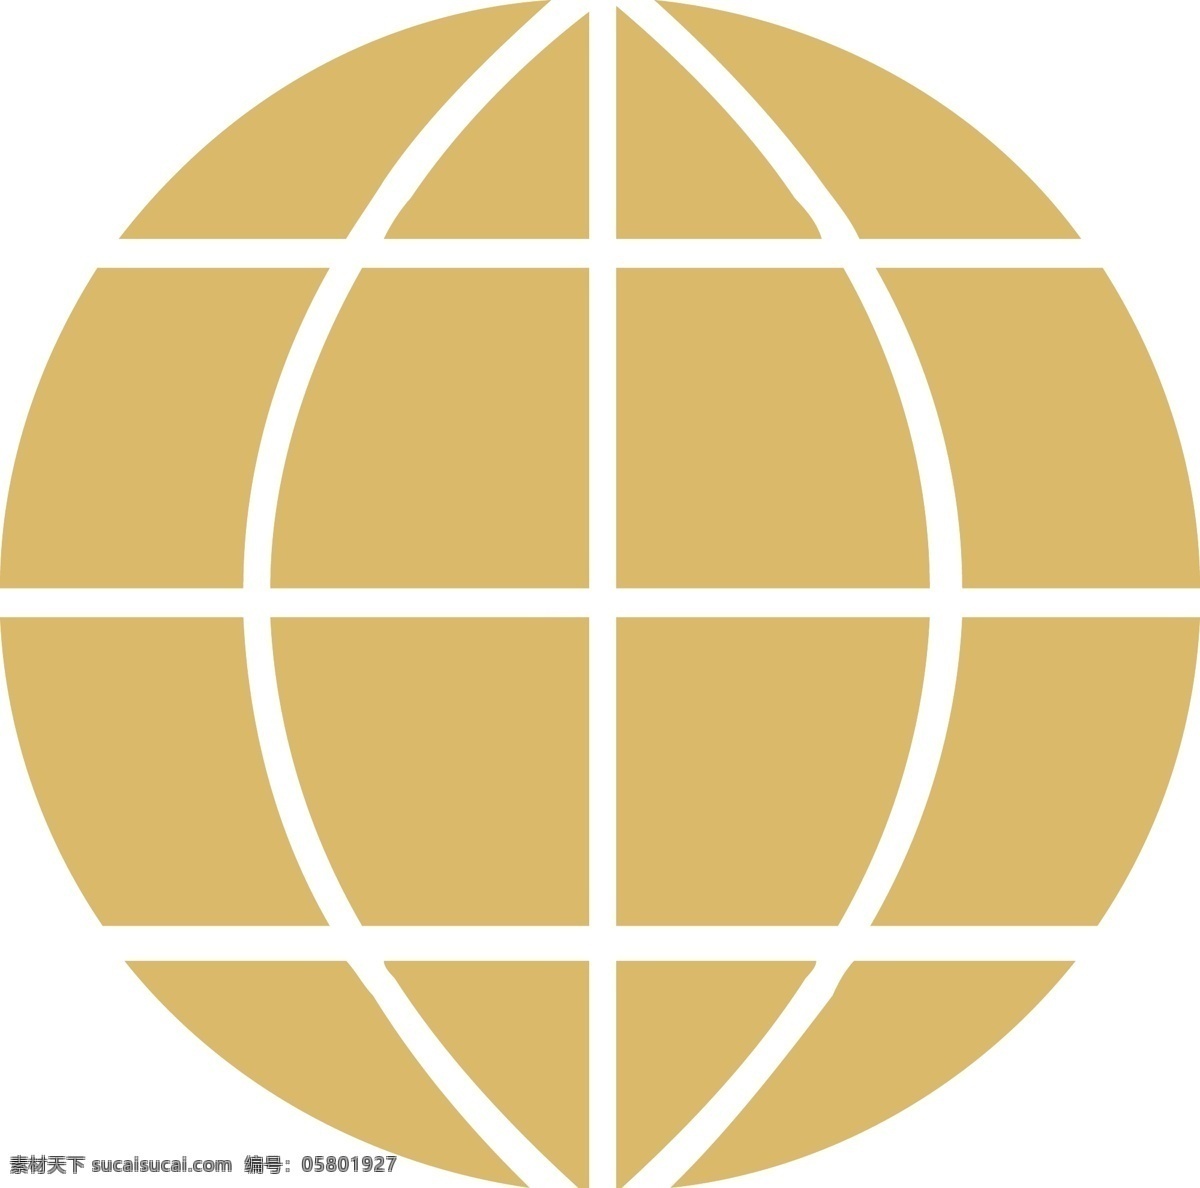 地球标志 地球logo 地球线条 金属标志 圆标志 金属地球 logo logo设计